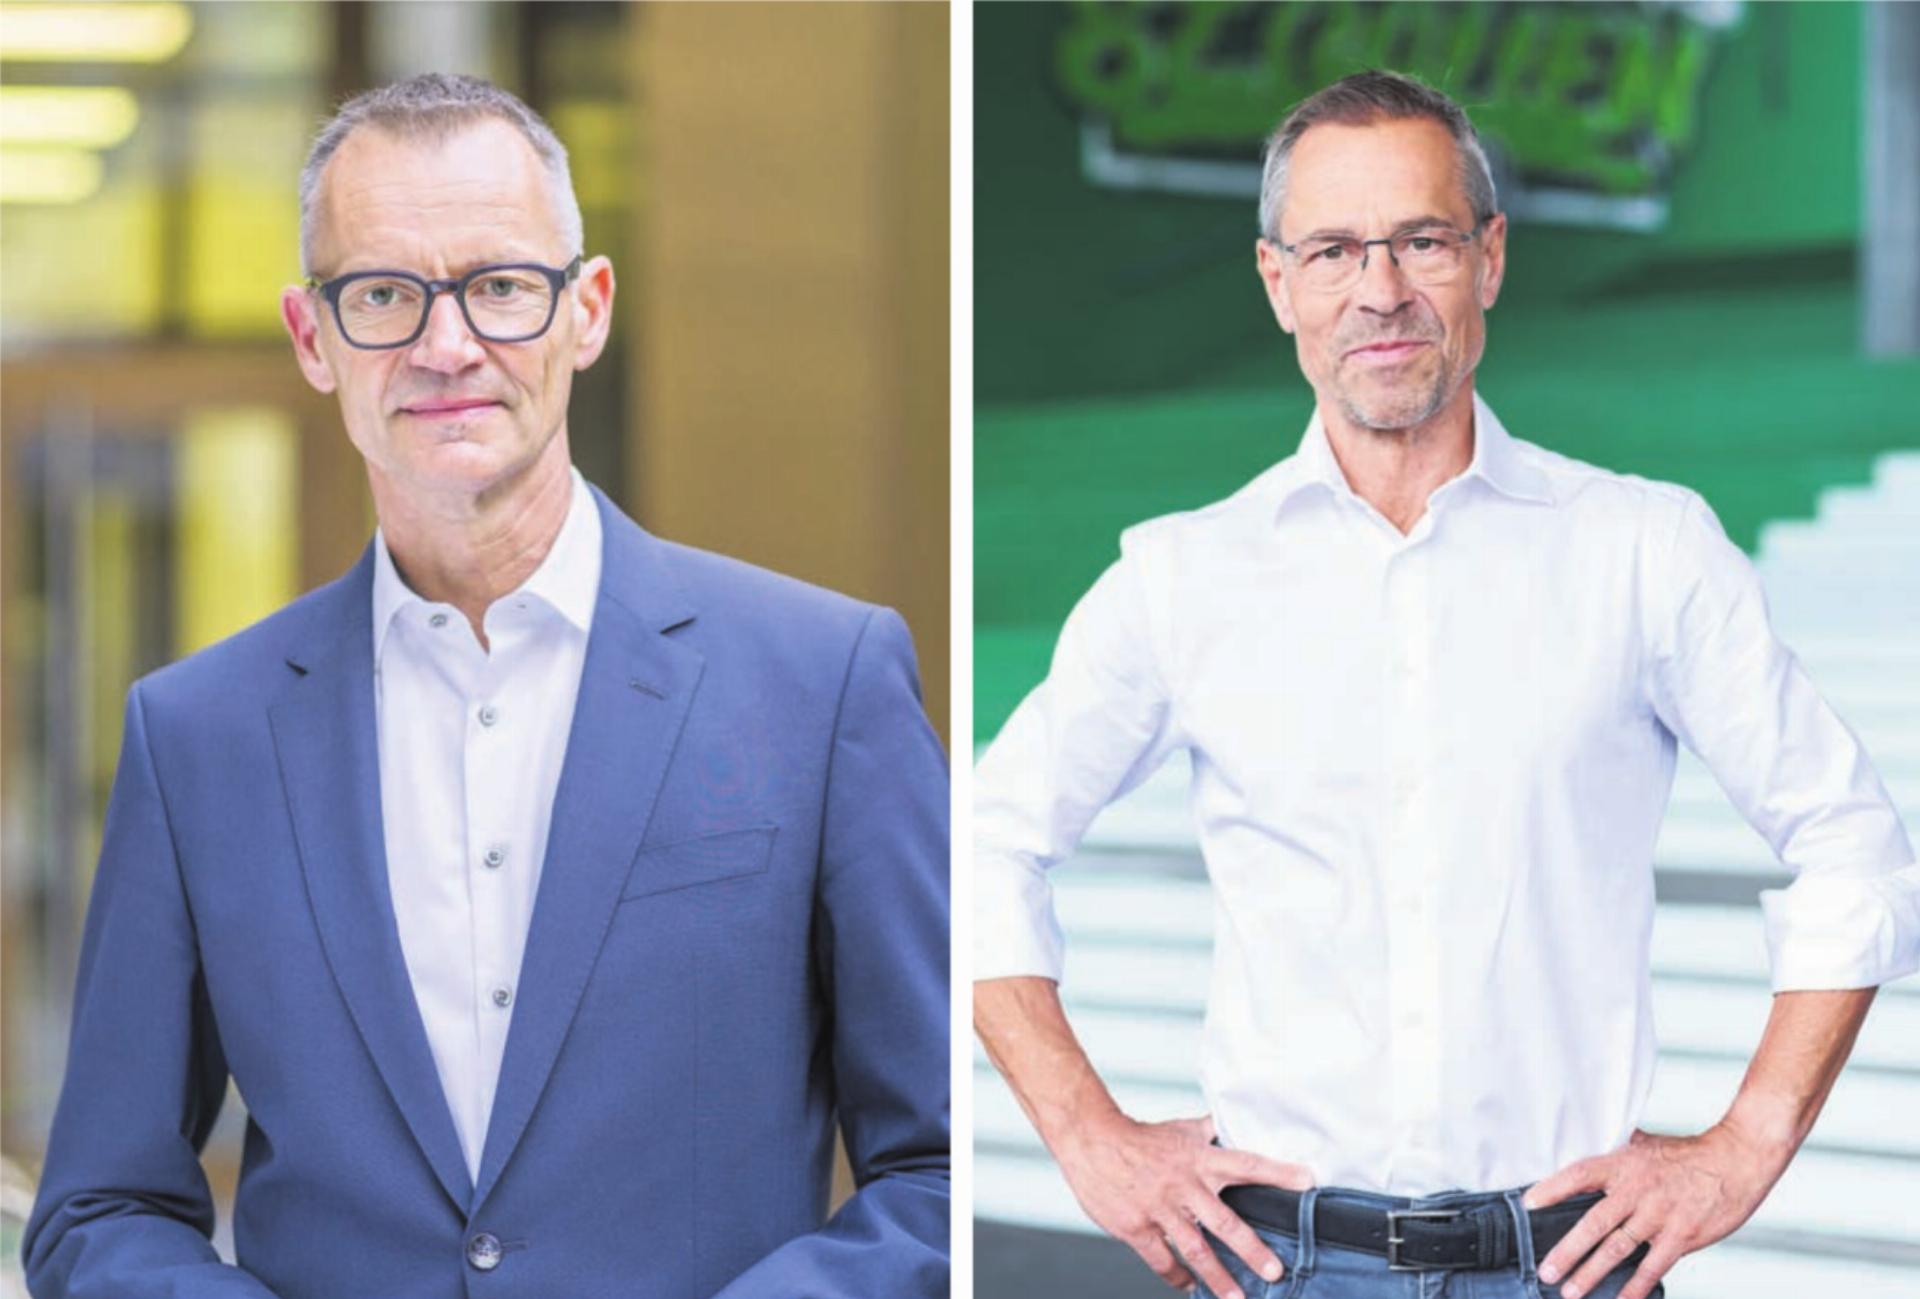 Der UBS-Chefökonom Daniel Kalt (links) und der Ex-Mutscheller, TV-Moderator und FC-St.-Gallen-Präsident Matthias Hüppi werden an der mega24 auftreten. Bilder: zg